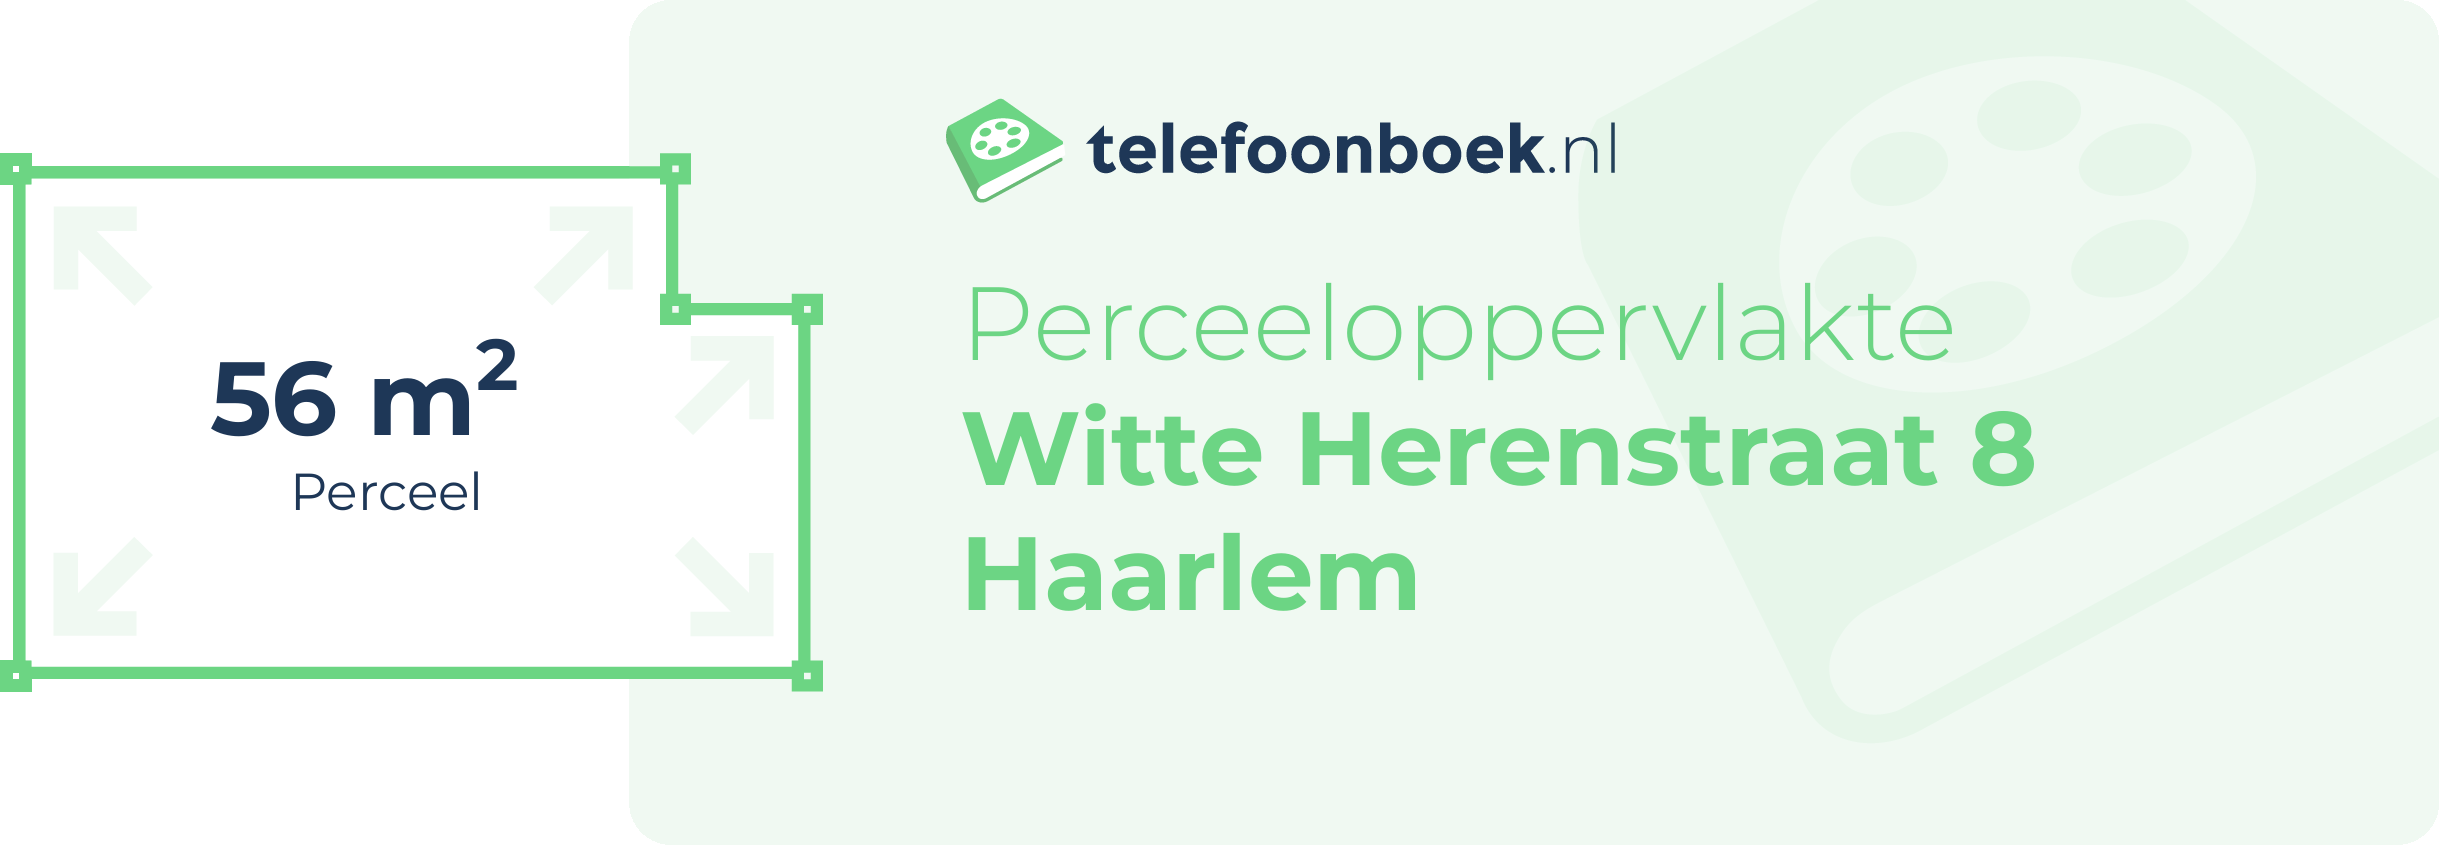 Perceeloppervlakte Witte Herenstraat 8 Haarlem